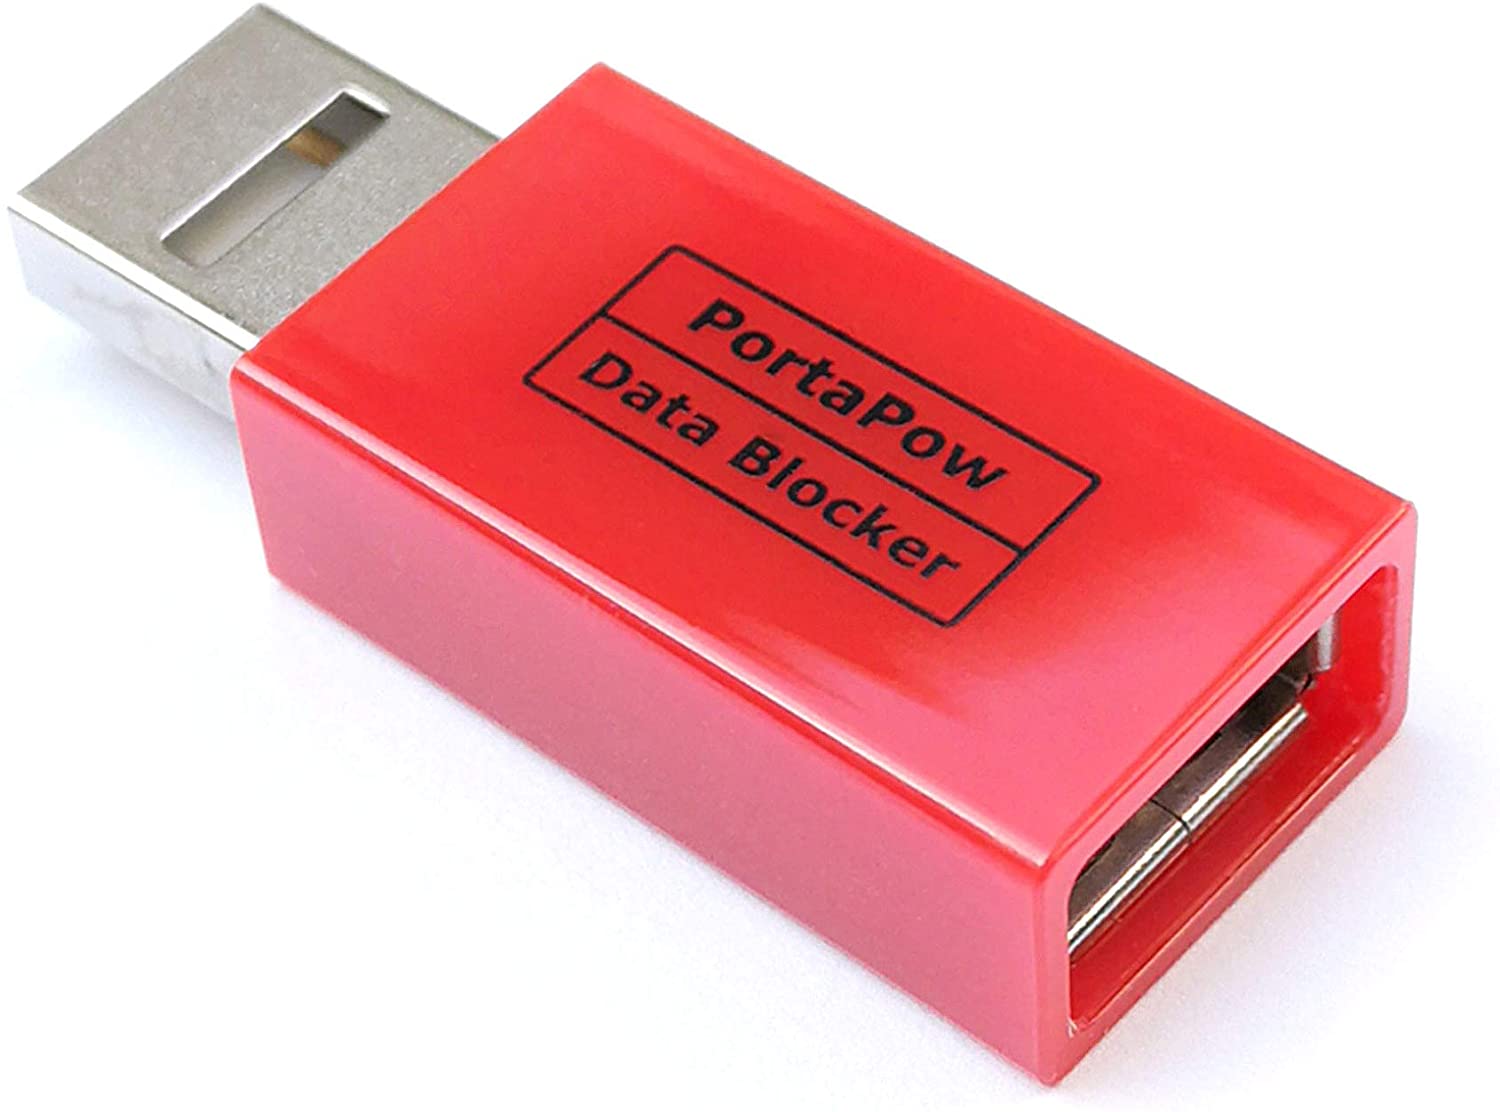 La clé USB qui recharge votre téléphone portable